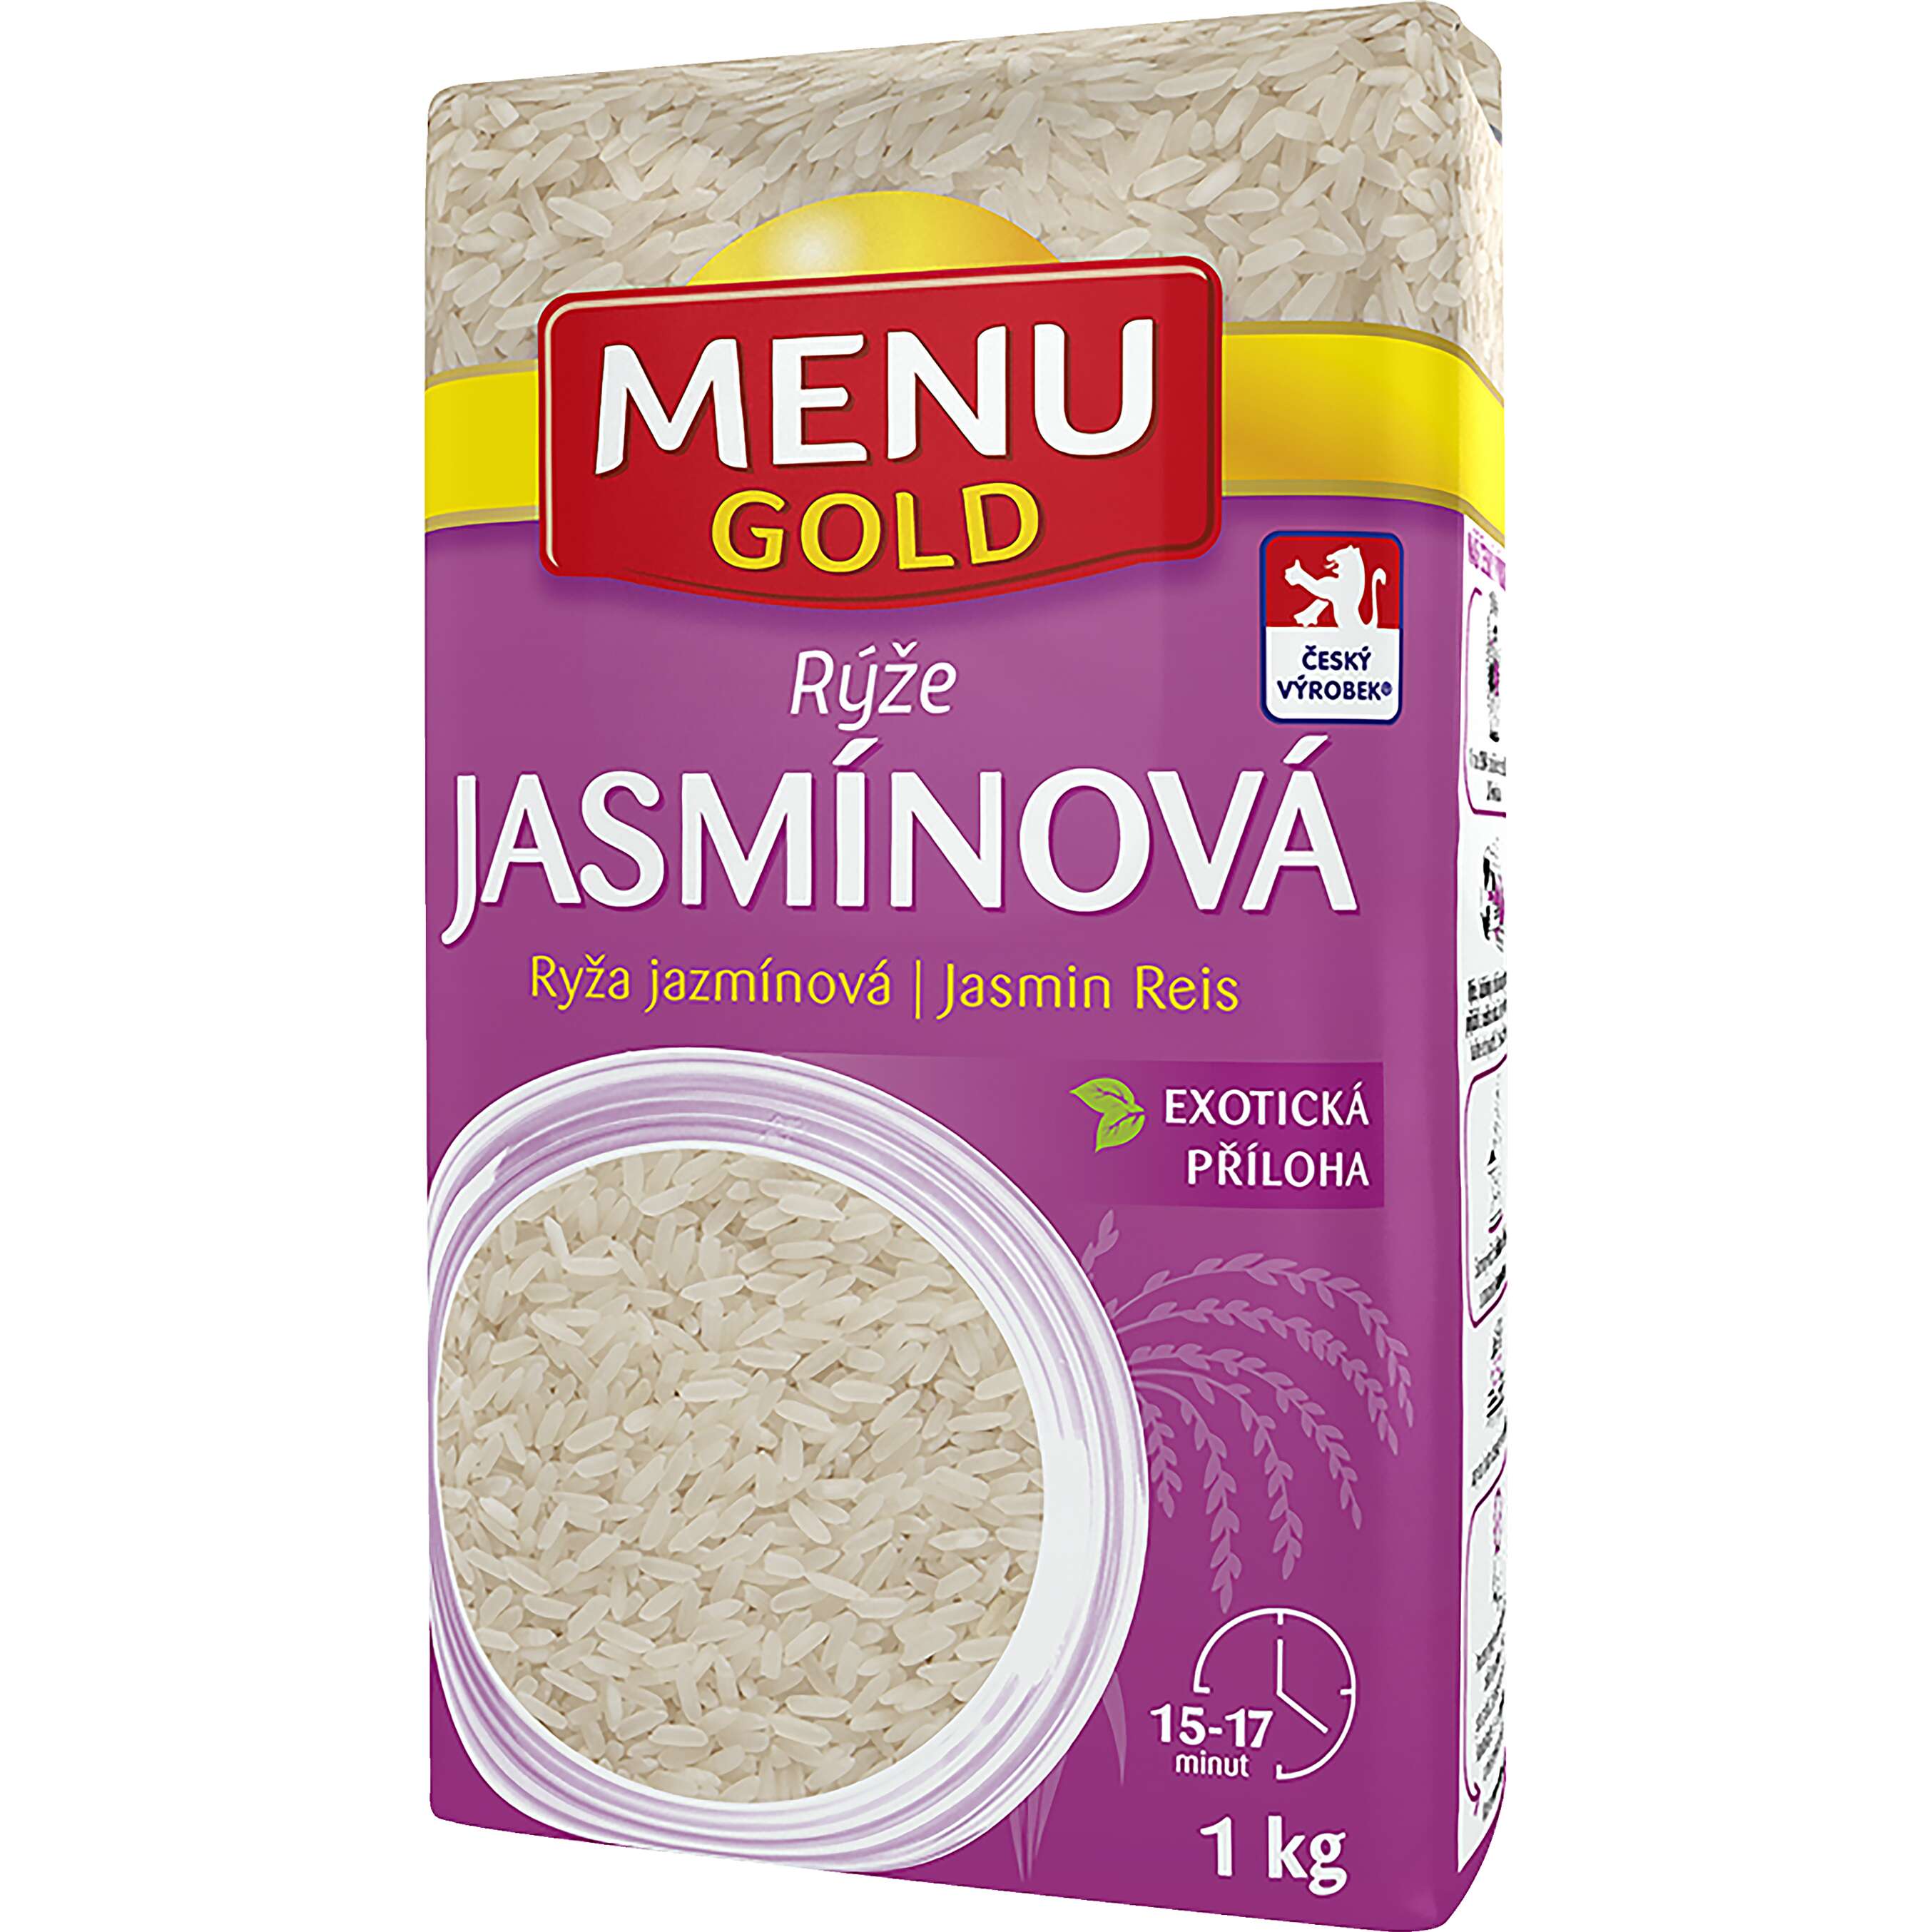 Zobrazit nabídku Menu Gold Jasmínová rýže